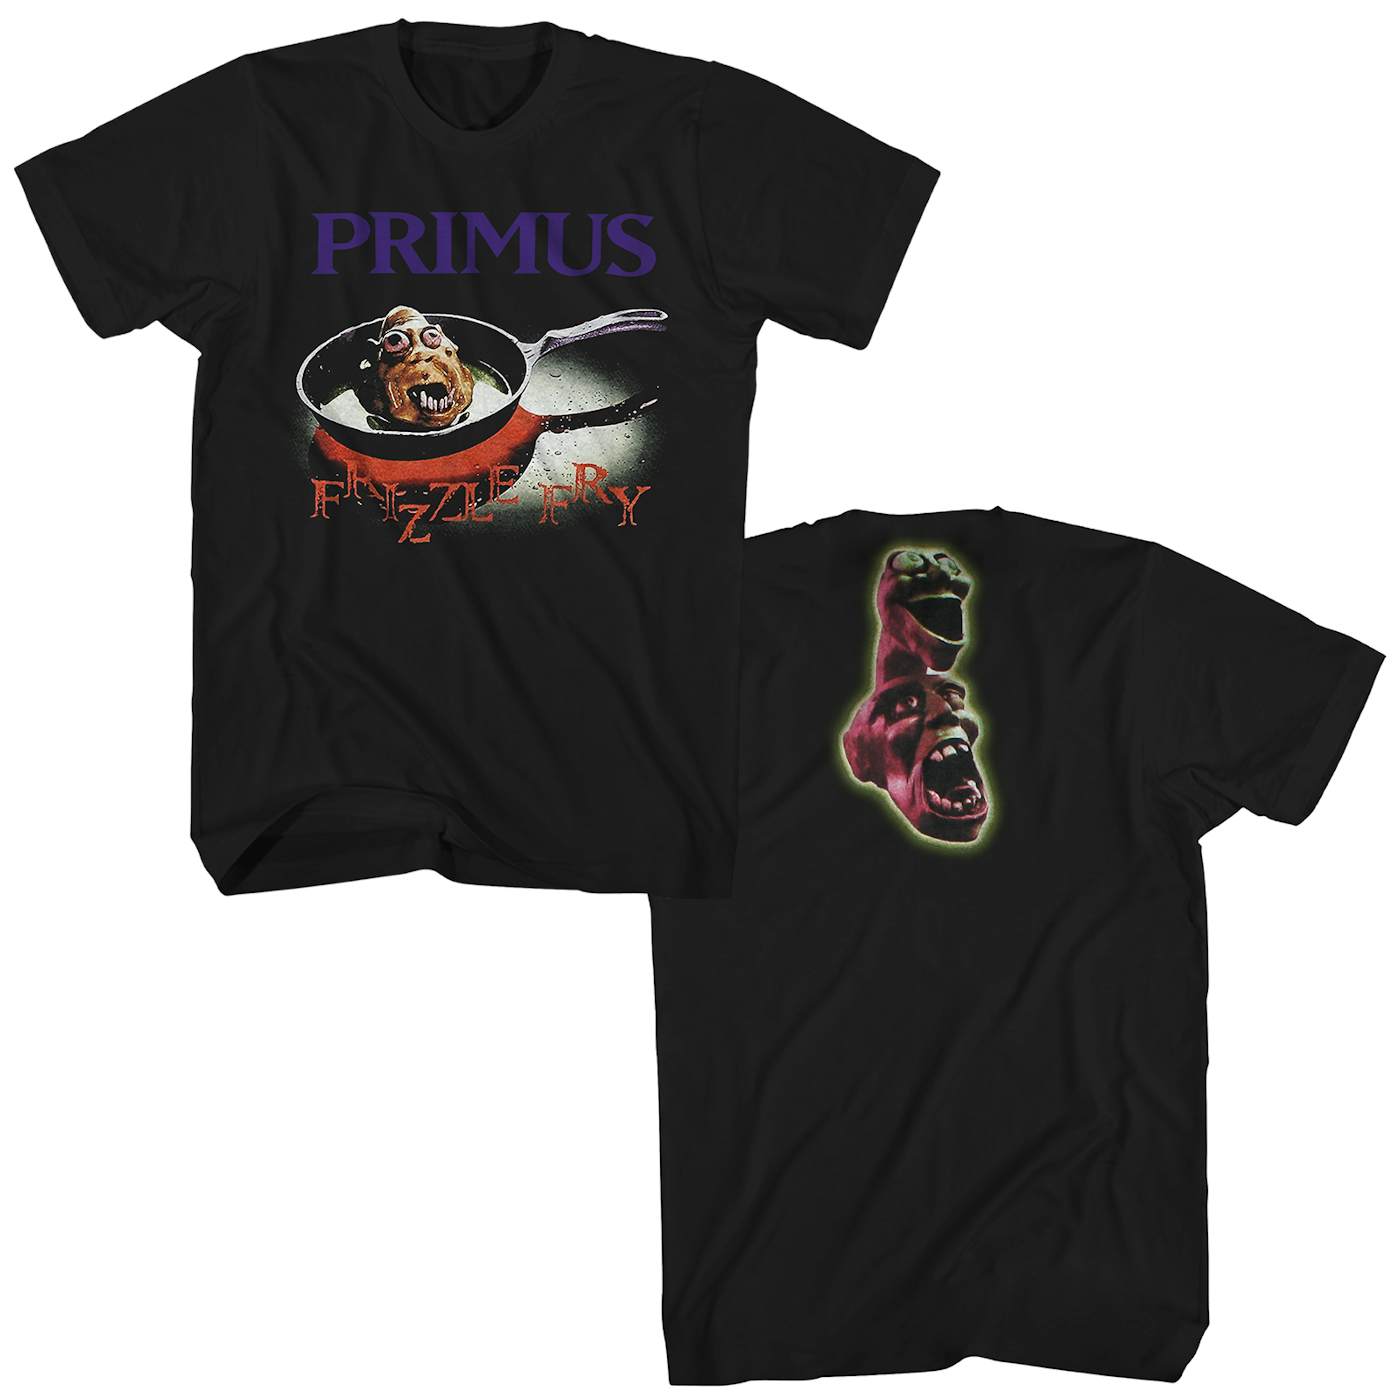 Frizzle Fry Album Art Shirt - Primus